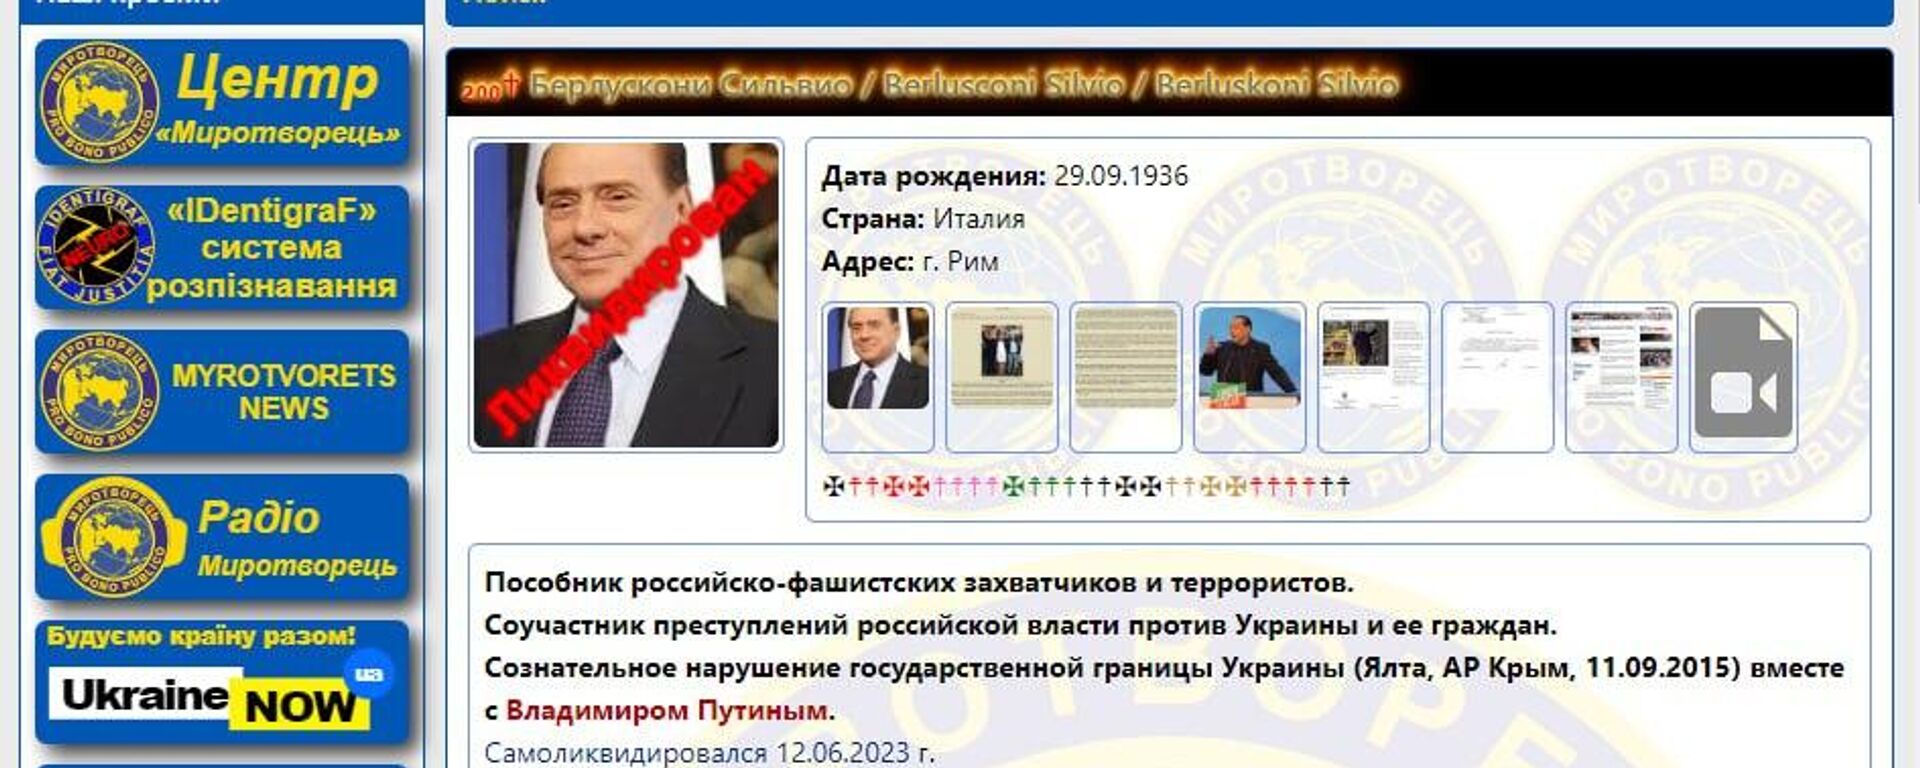 El polémico sitio web Mirotvorets con los datos del ex primer ministro italiano, Silvio Berlusconi - Sputnik Mundo, 1920, 12.06.2023